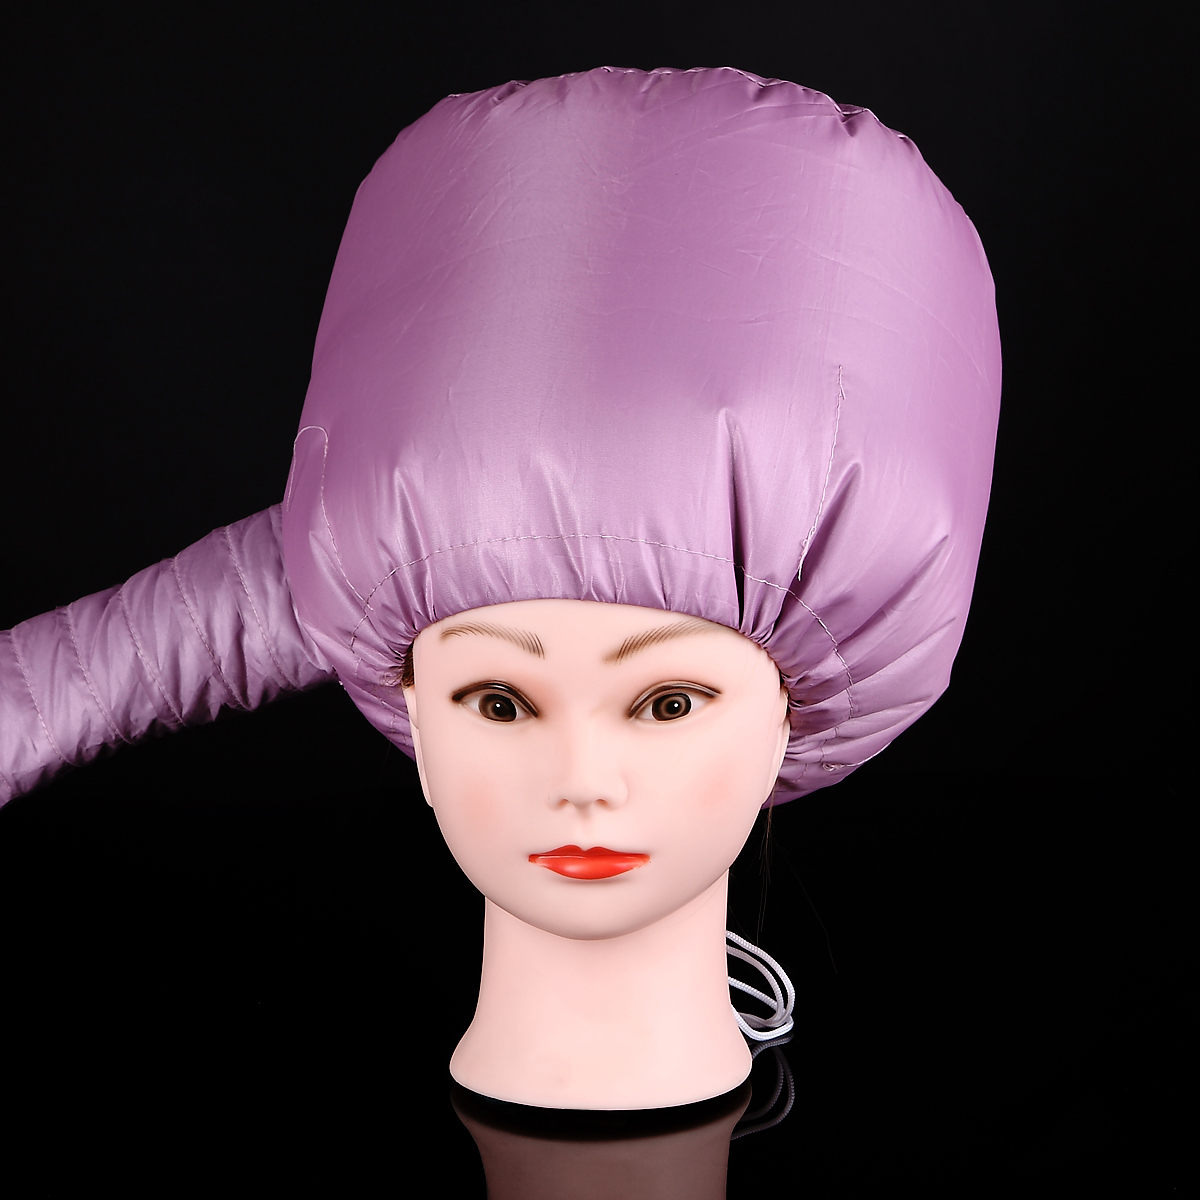 Pro Salon Home Use Hair Dryer Cap Portable Hair Perm Nursing Warm Diffuser Hat Hair Care Steamer Accessories